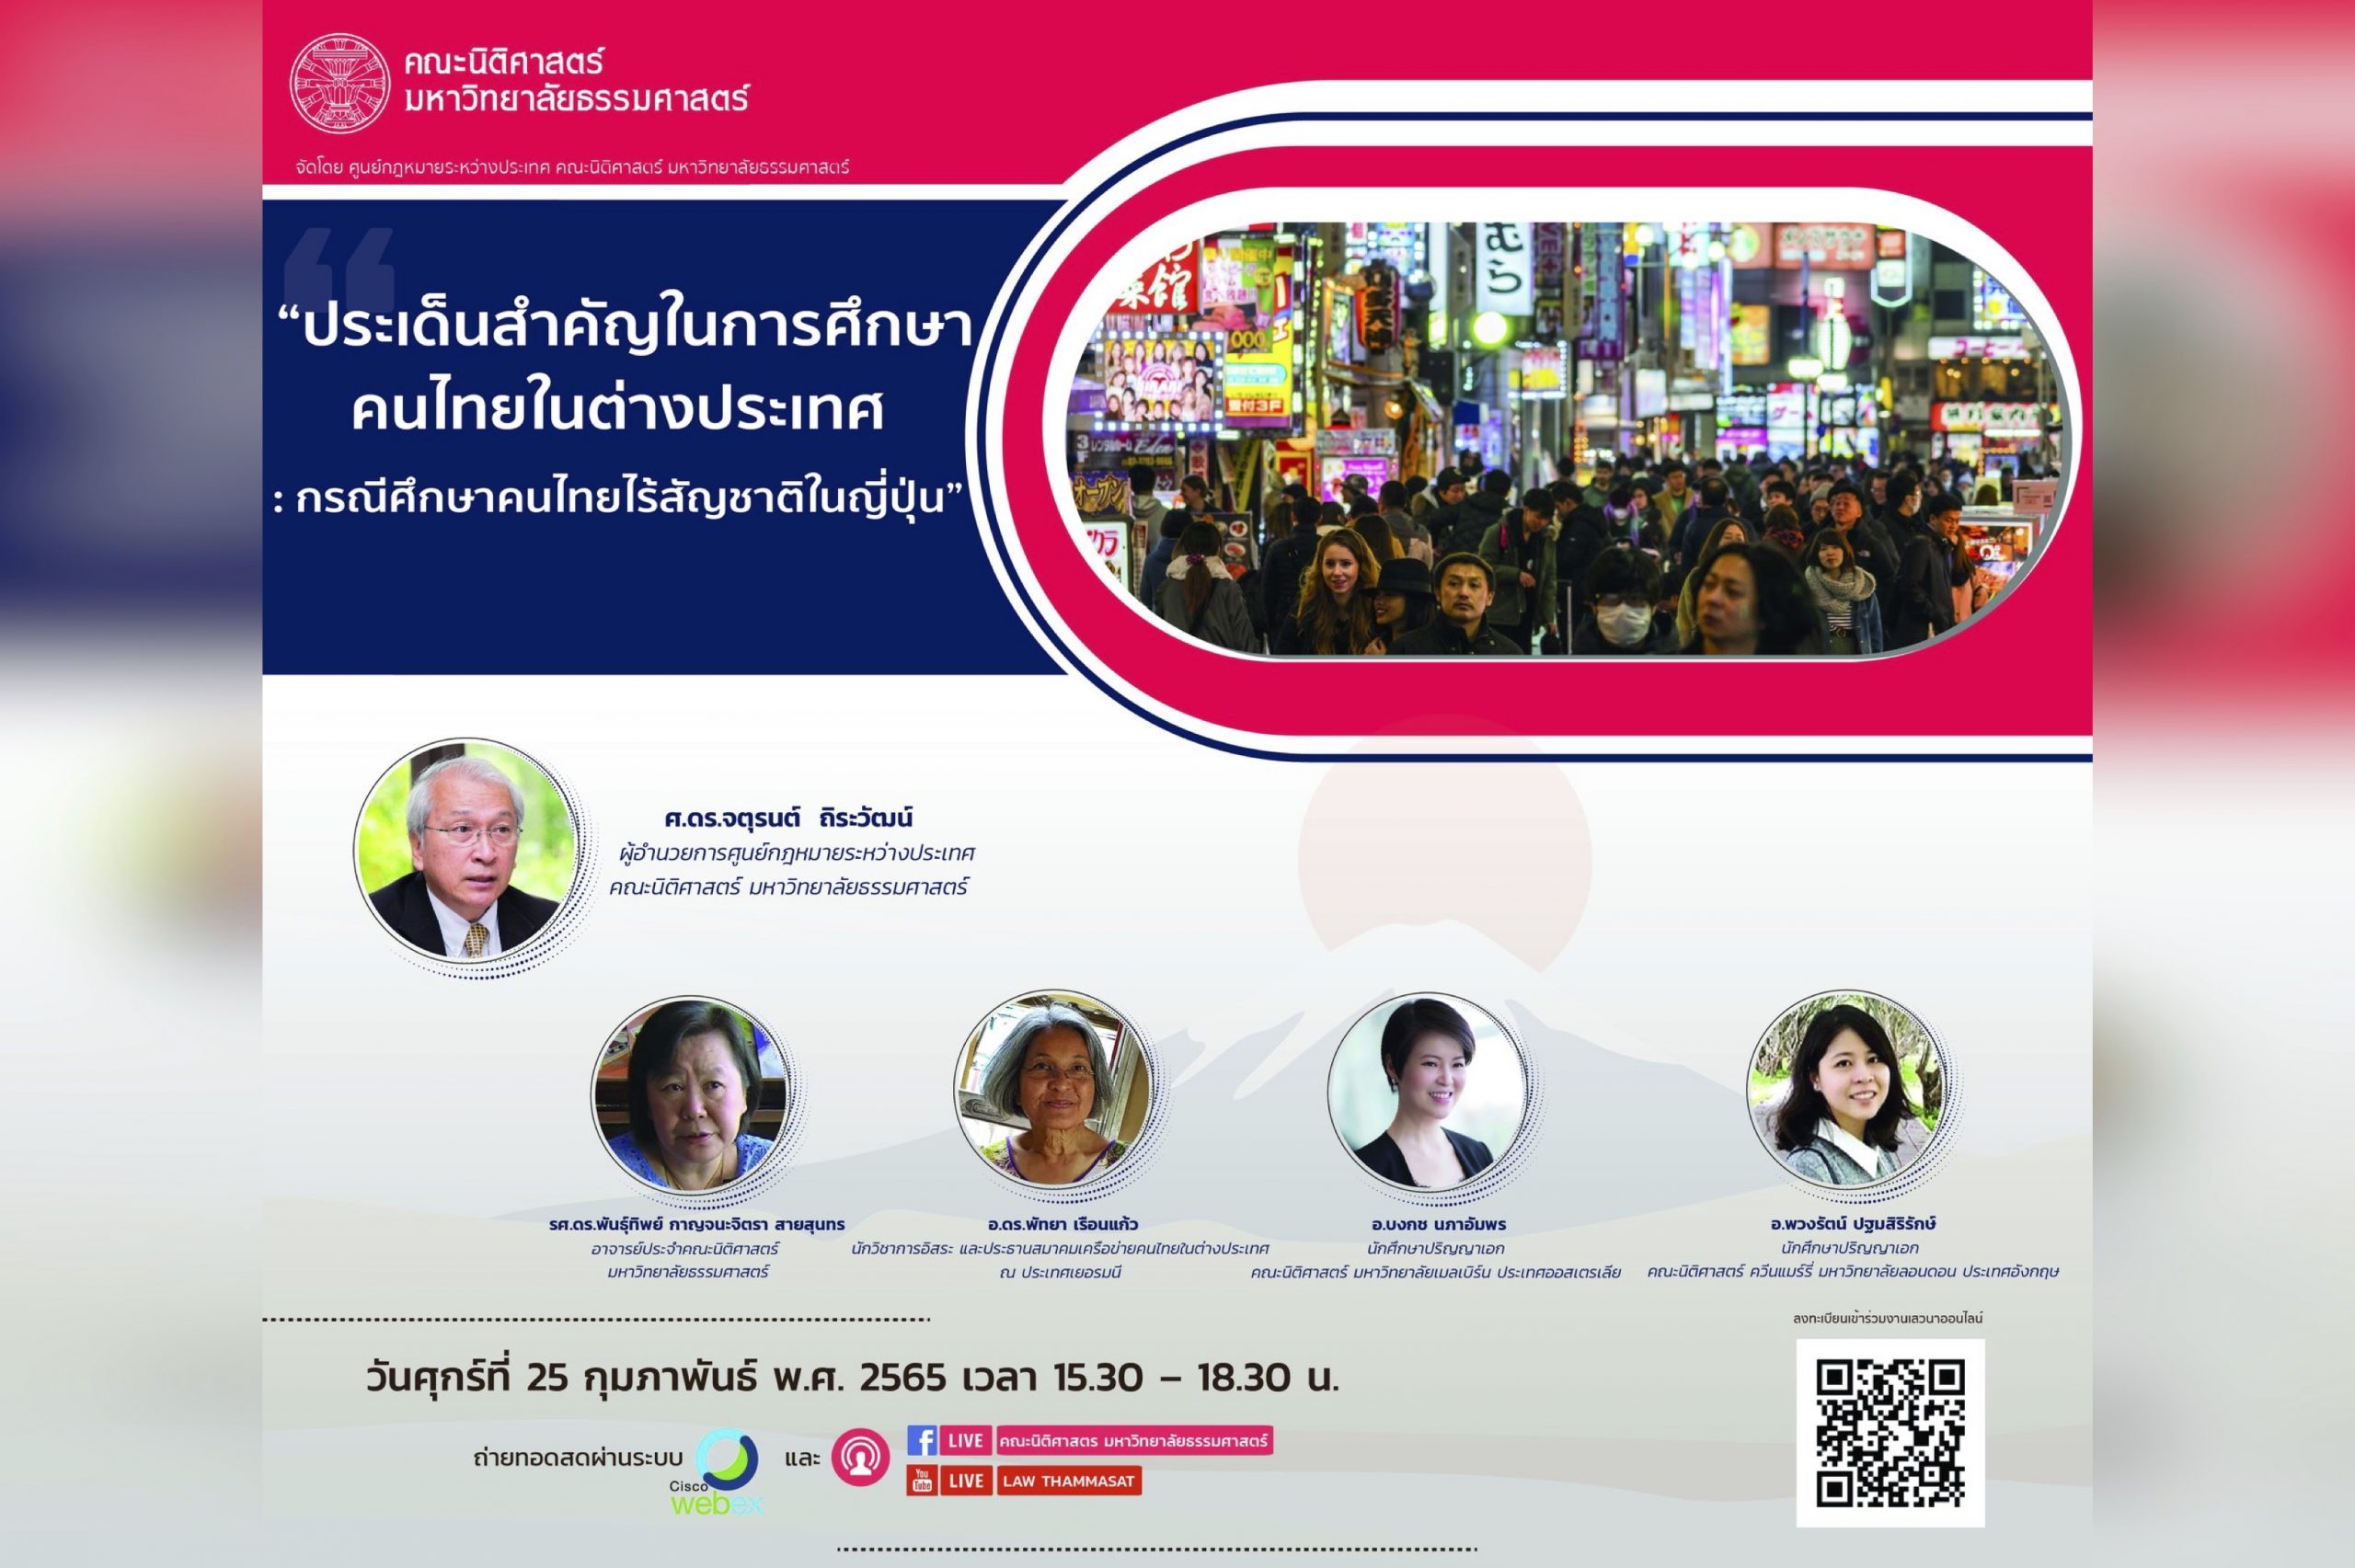 สรุปสาระสำคัญจากเสวนาวิชาการเรื่อง “ประเด็นสำคัญในการศึกษาคนไทยในต่างประเทศ : กรณีศึกษาคนไทยไร้สัญชาติในญี่ปุ่น”